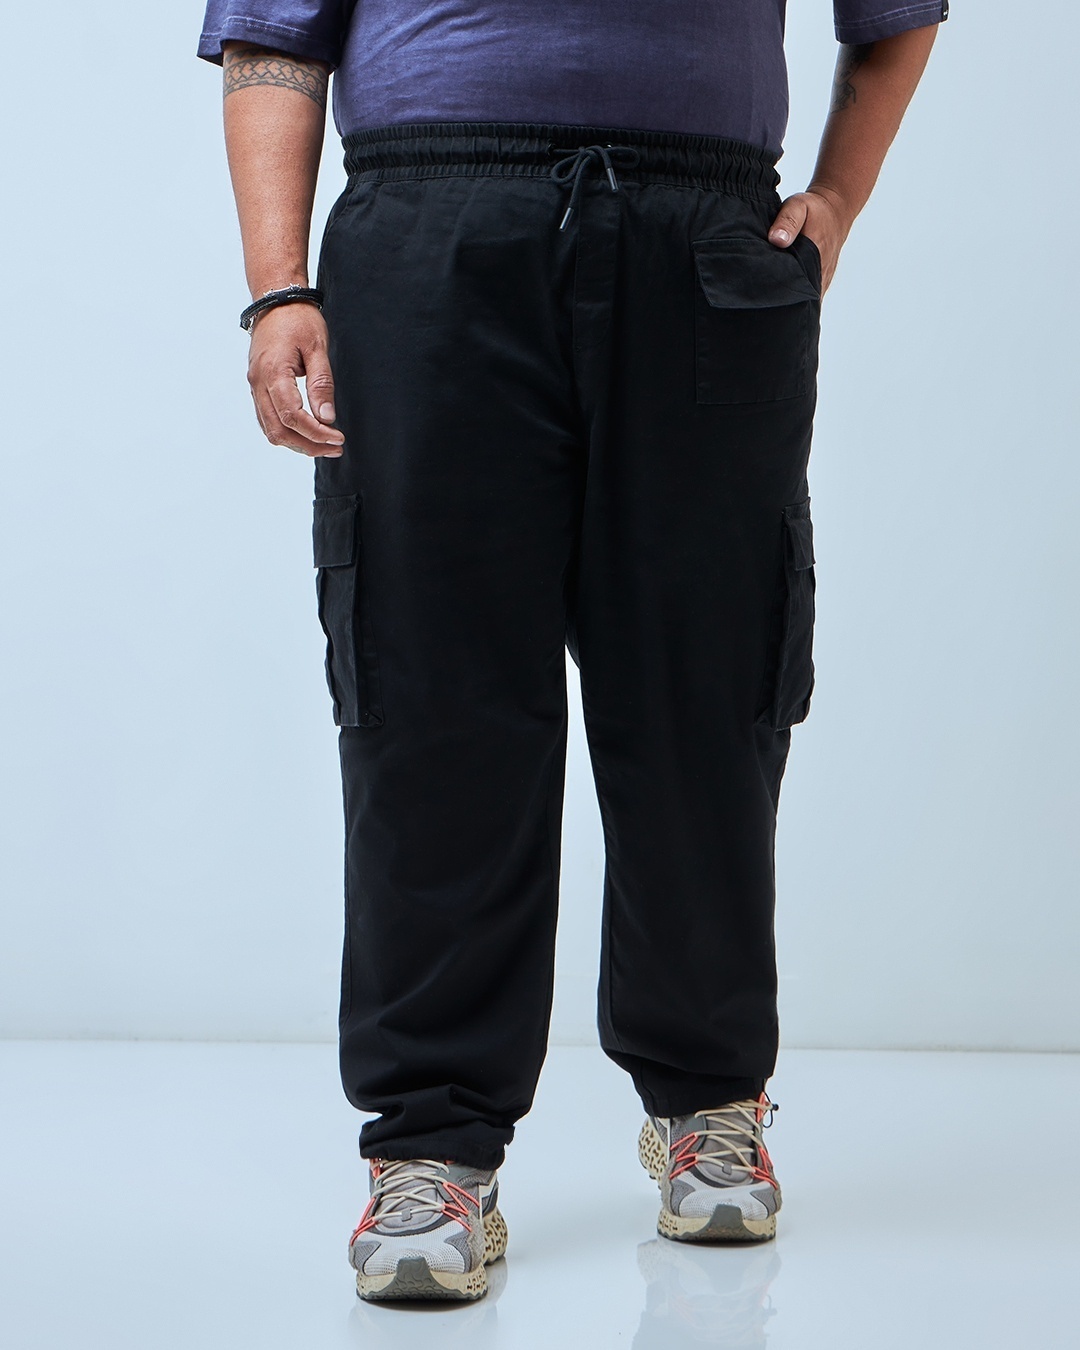 Buy Men's Black Oversized Plus Size Cargo Pants Online at Bewakoof